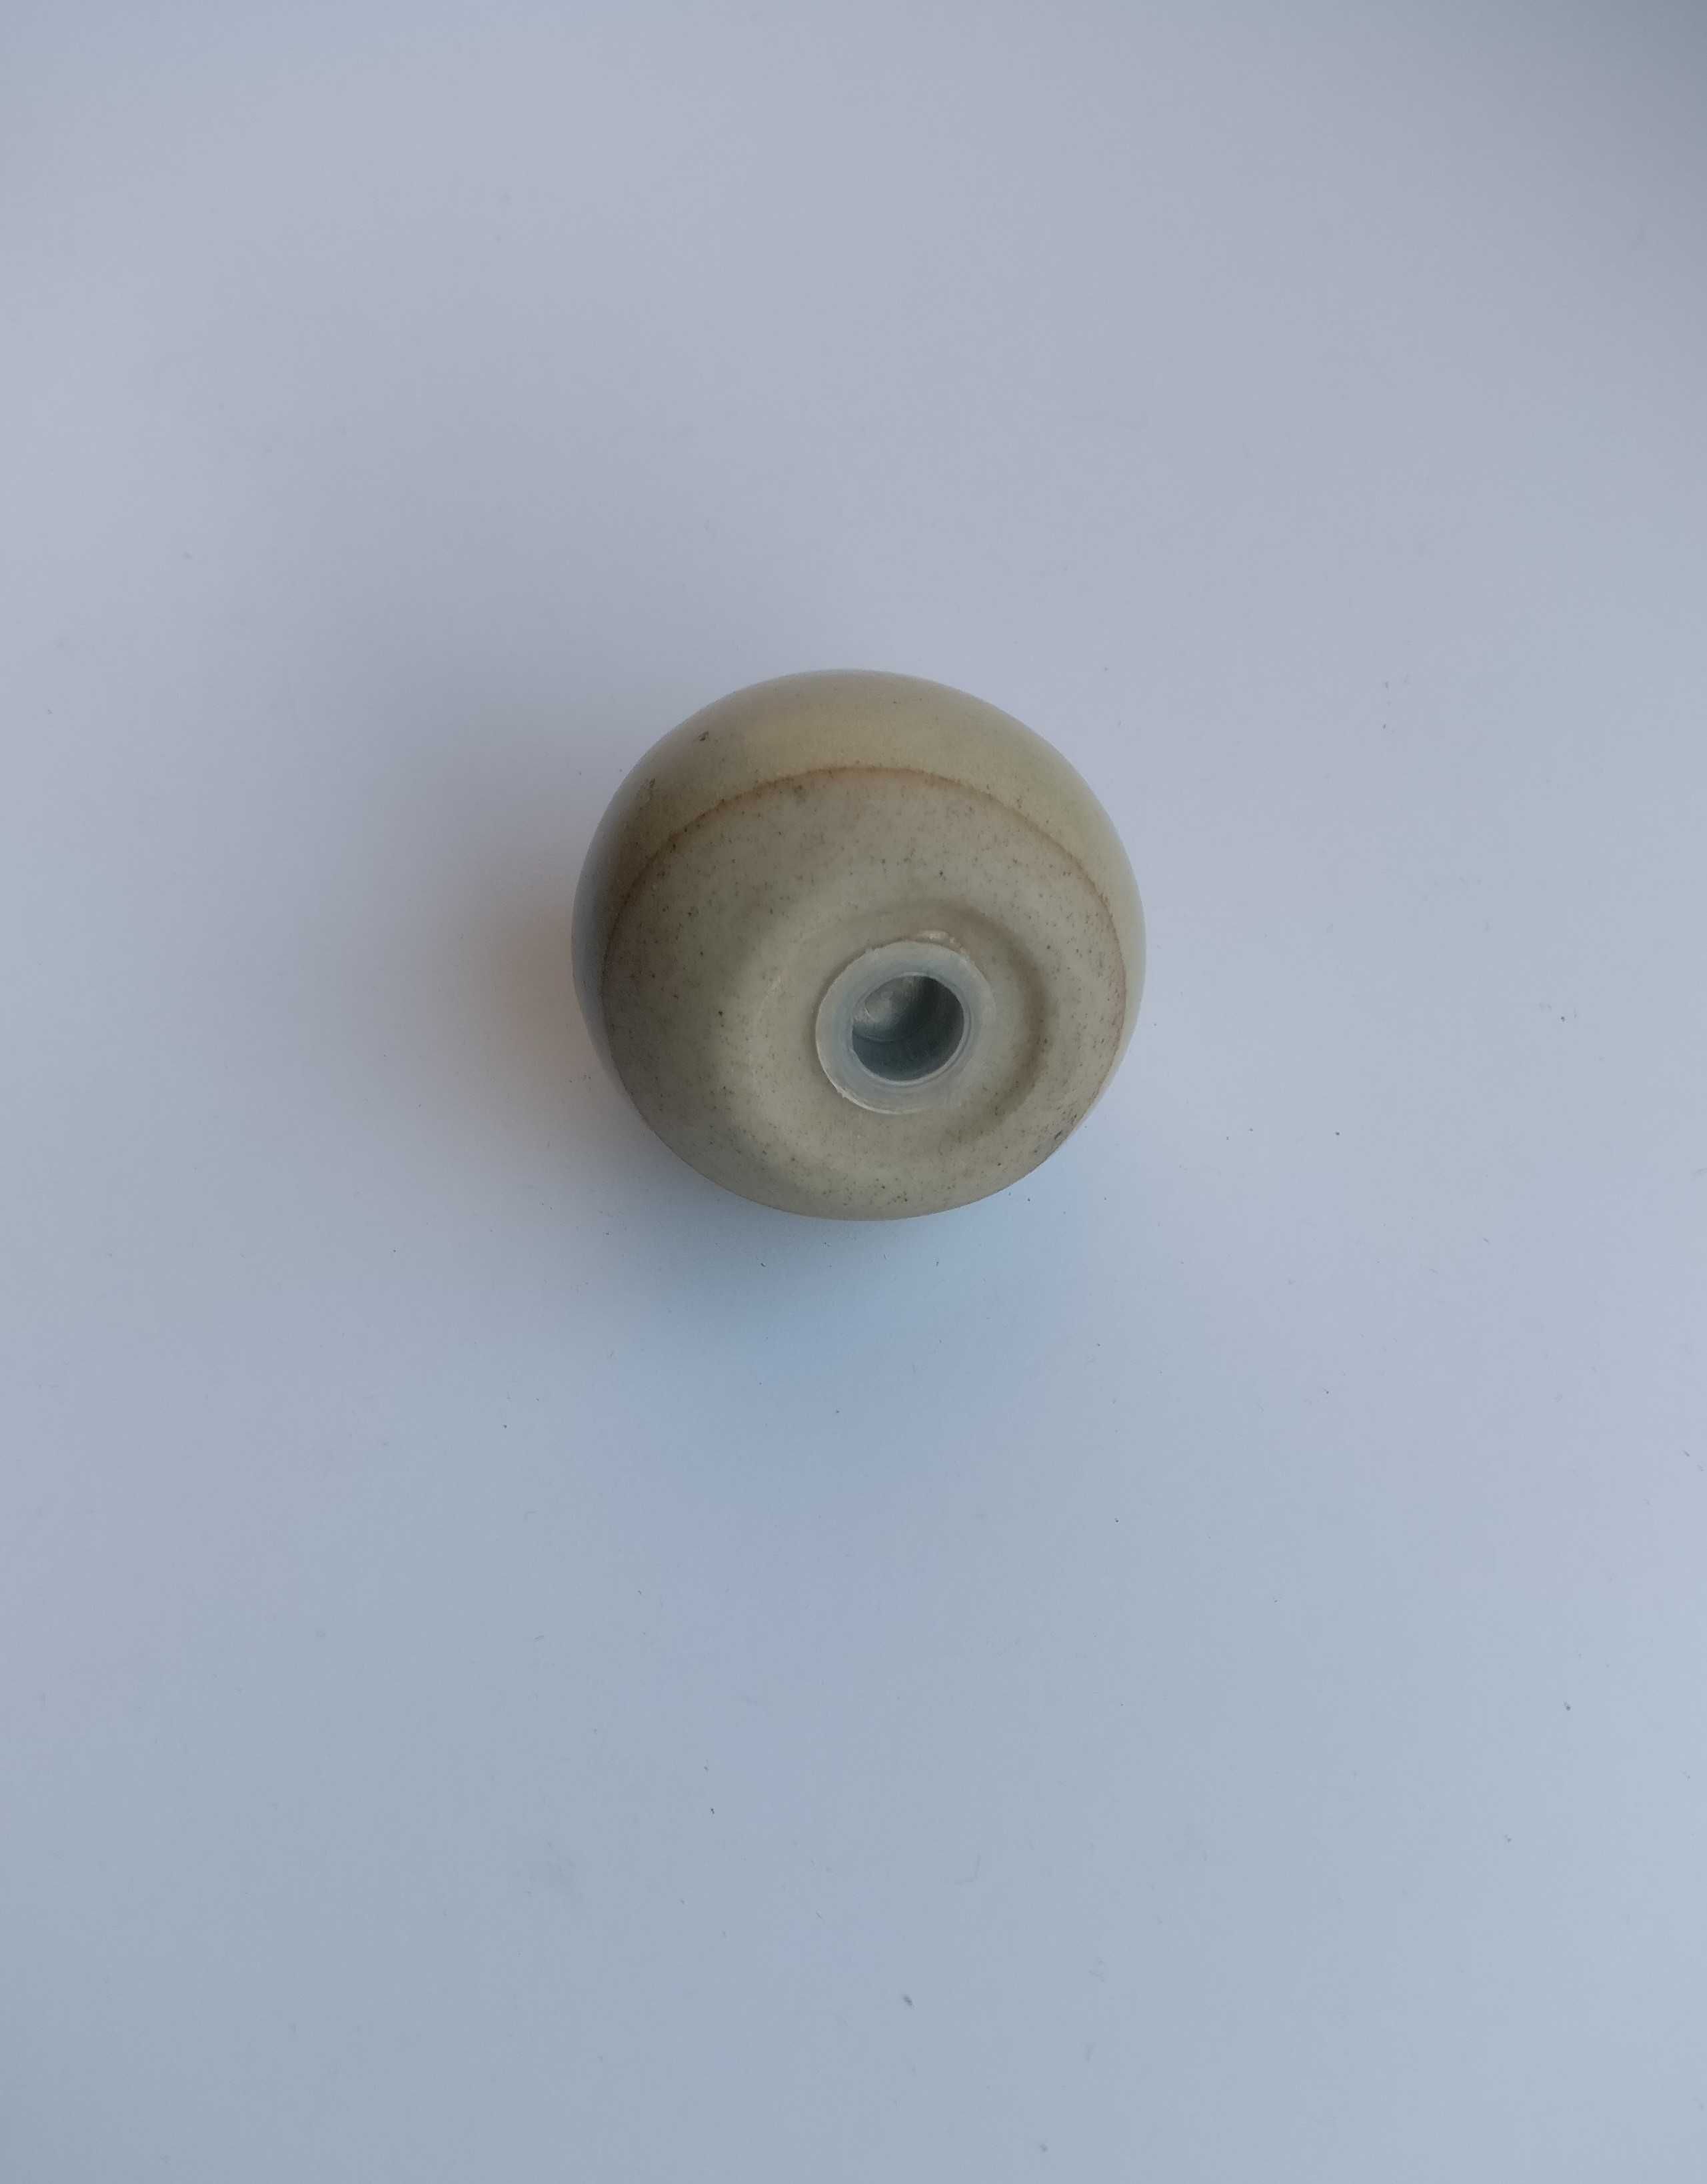 Niewielka ceramiczna solniczka / pieprzniczka w kształcie sowy